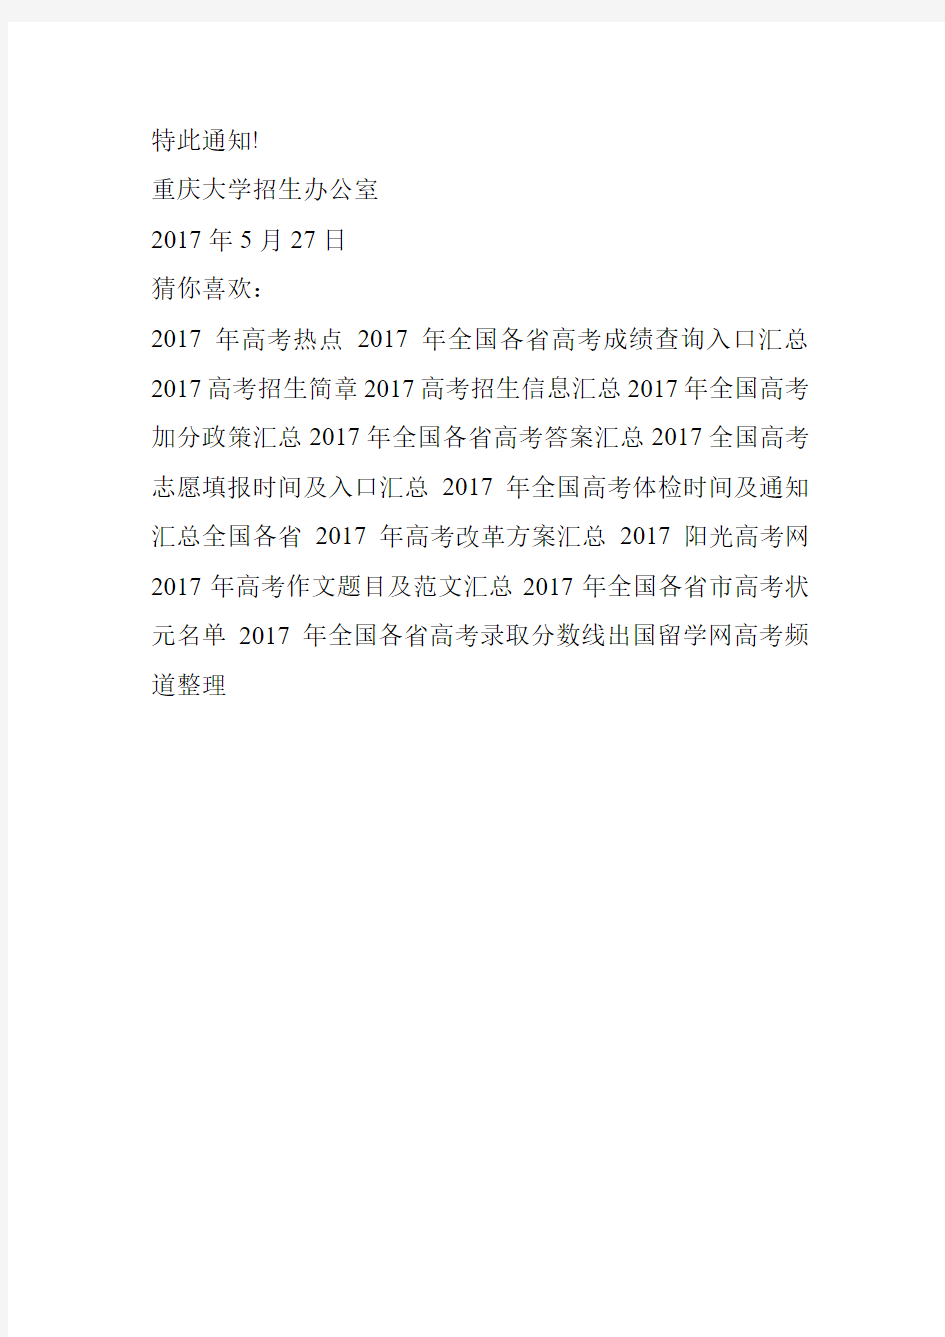 2017年重庆大学自主招生面试考核重要通知